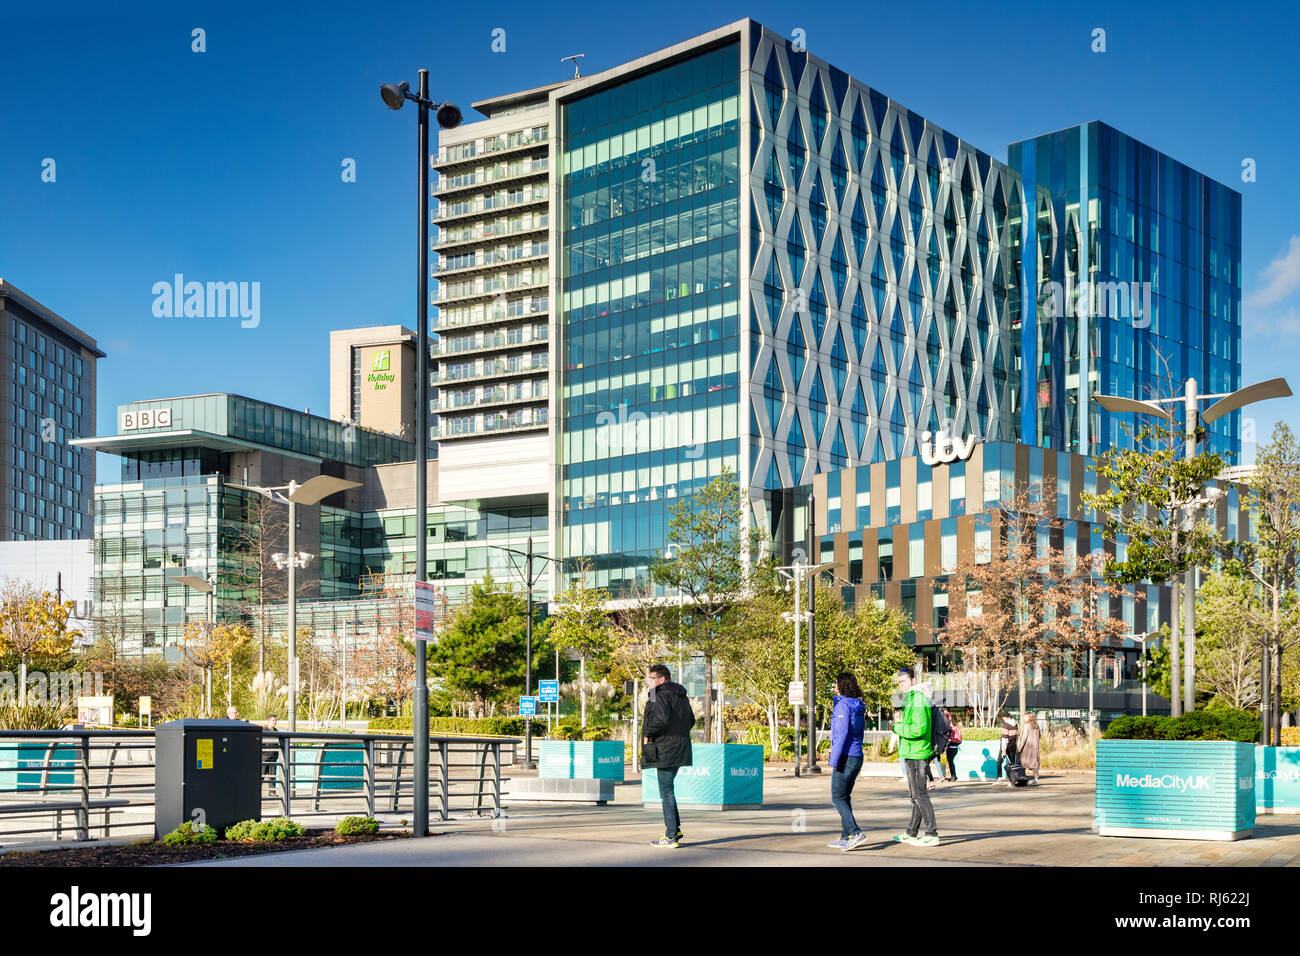 2 novembre 2018 : les quais de Salford, Manchester, UK - ITV et BBC bâtiments sur une journée ensoleillée d'automne, ciel bleu clair, habillés de couleurs vives les jeunes dans... Banque D'Images